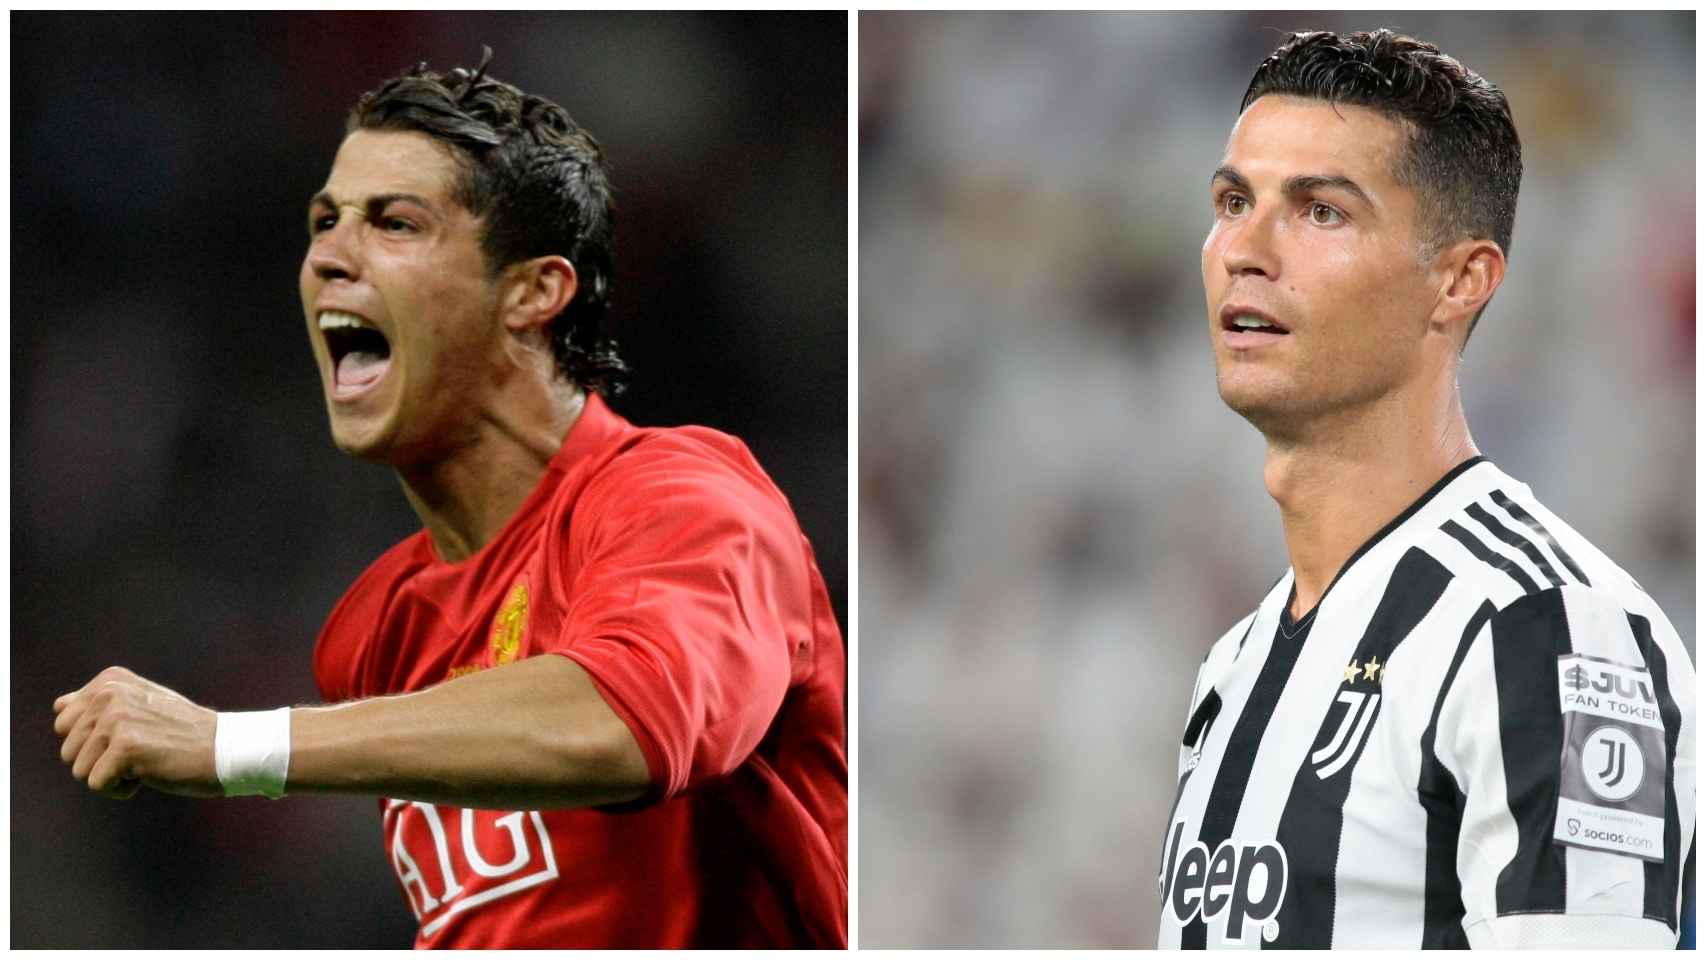 Cristiano Ronaldo, durante su anterior etapa en el Manchester (2003-2007), a la izquierda. A la derecha, durante este 2021.